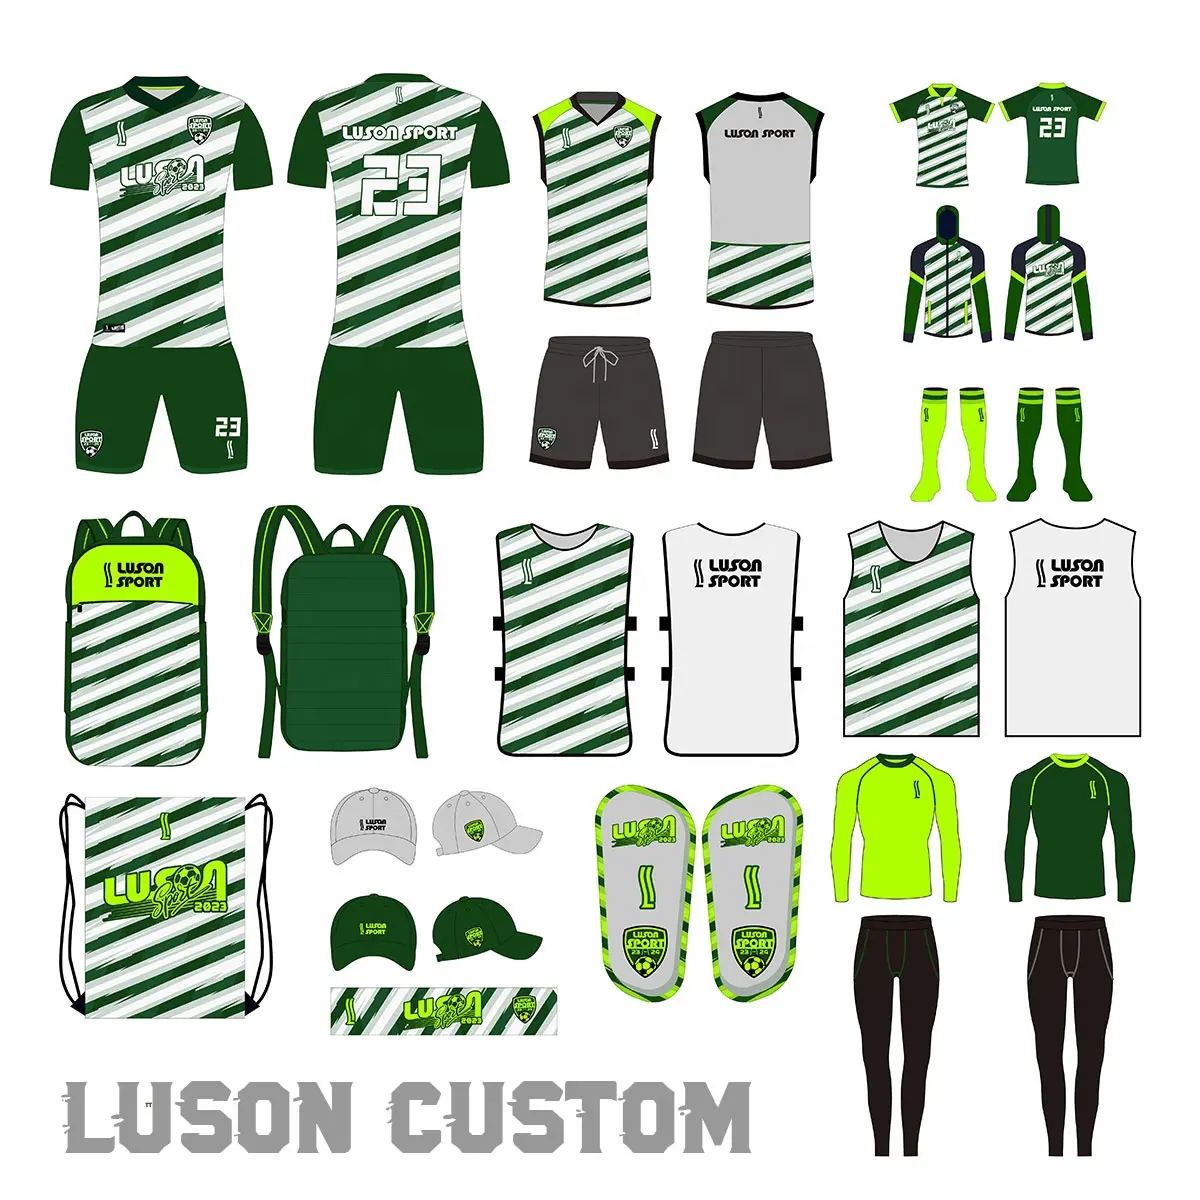 Luson toptan fiyat futbol kıyafetleri erkekler özel tasarım süblimasyon baskı futbol eğitimi eşofman futbol futbol forması seti